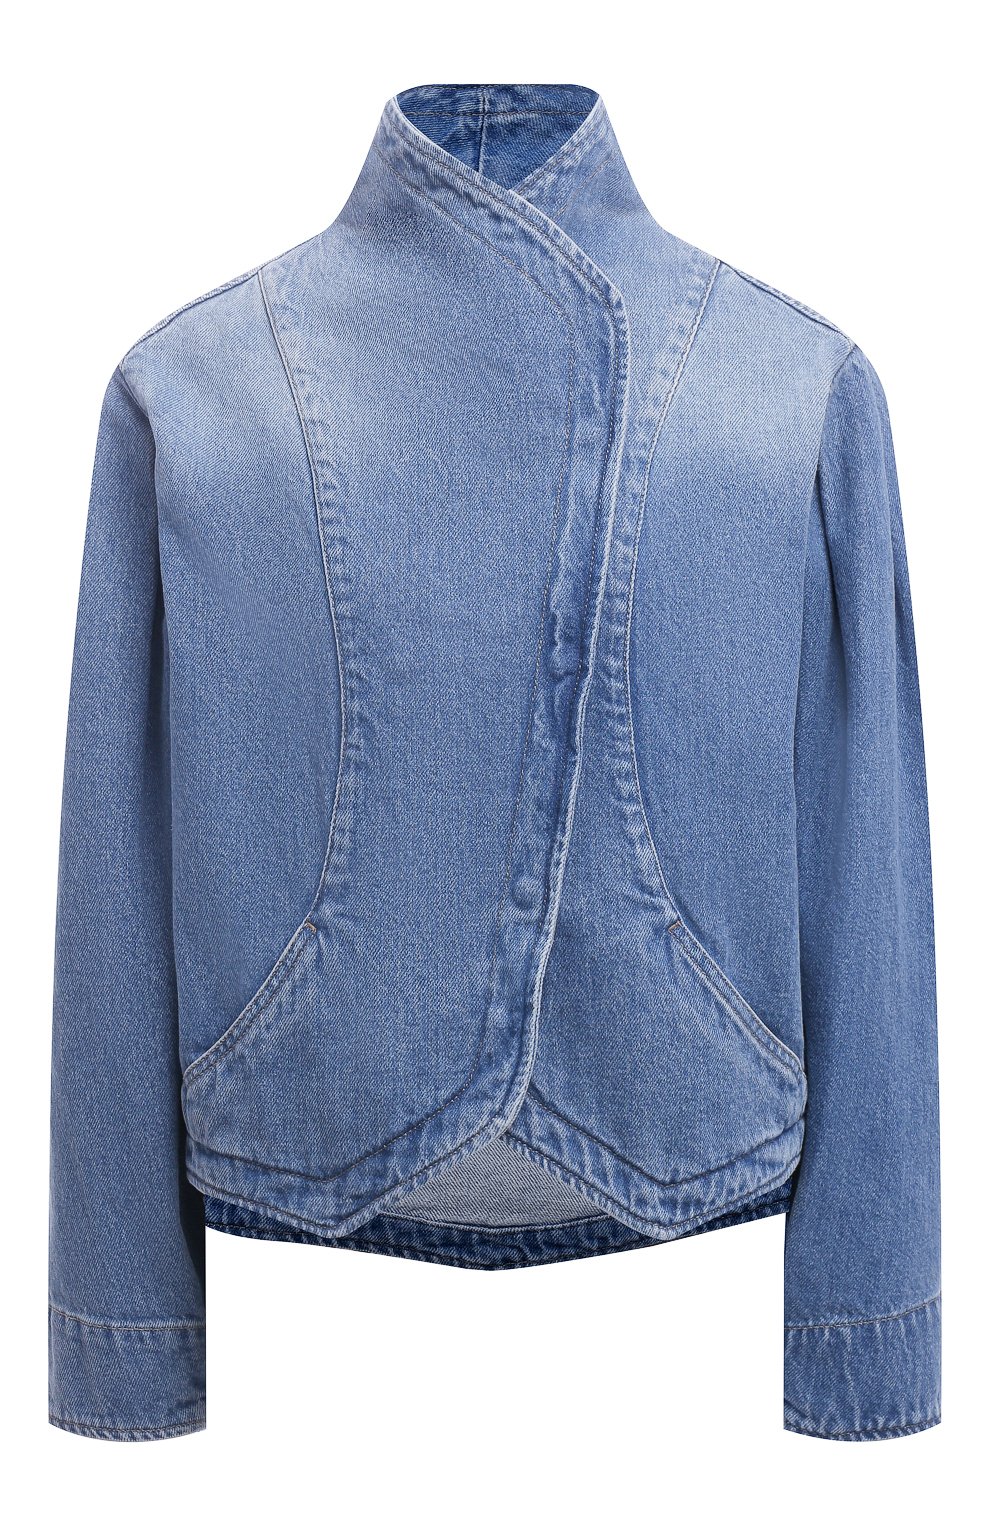 Куртки Isabel Marant, Джинсовая куртка Isabel Marant, Марокко, Голубой, Хлопок: 100%;, 12497675  - купить